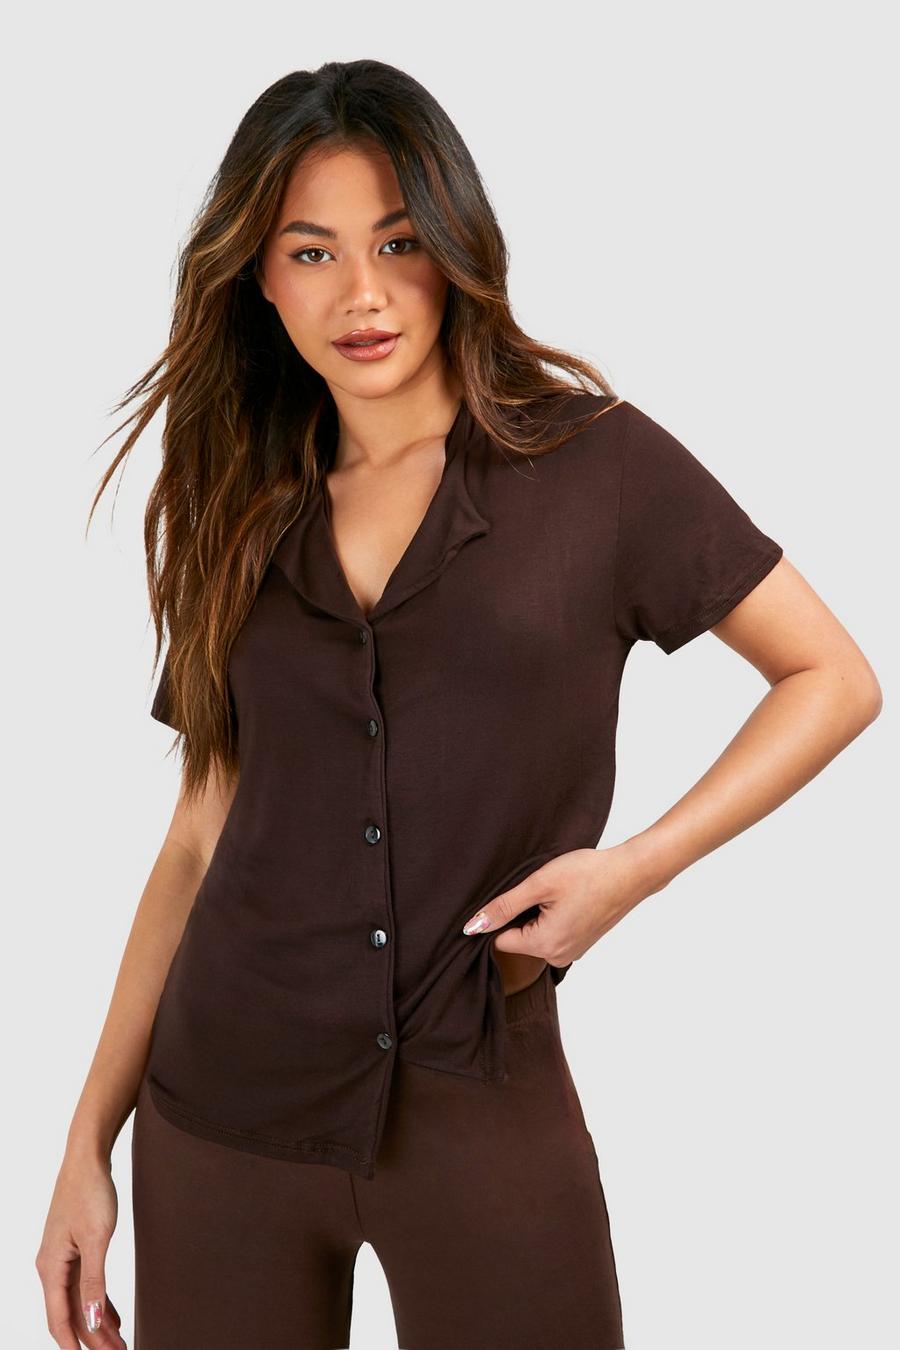 Chocolate Jersey Knit Short Sleeve Button Up Pj Shirt